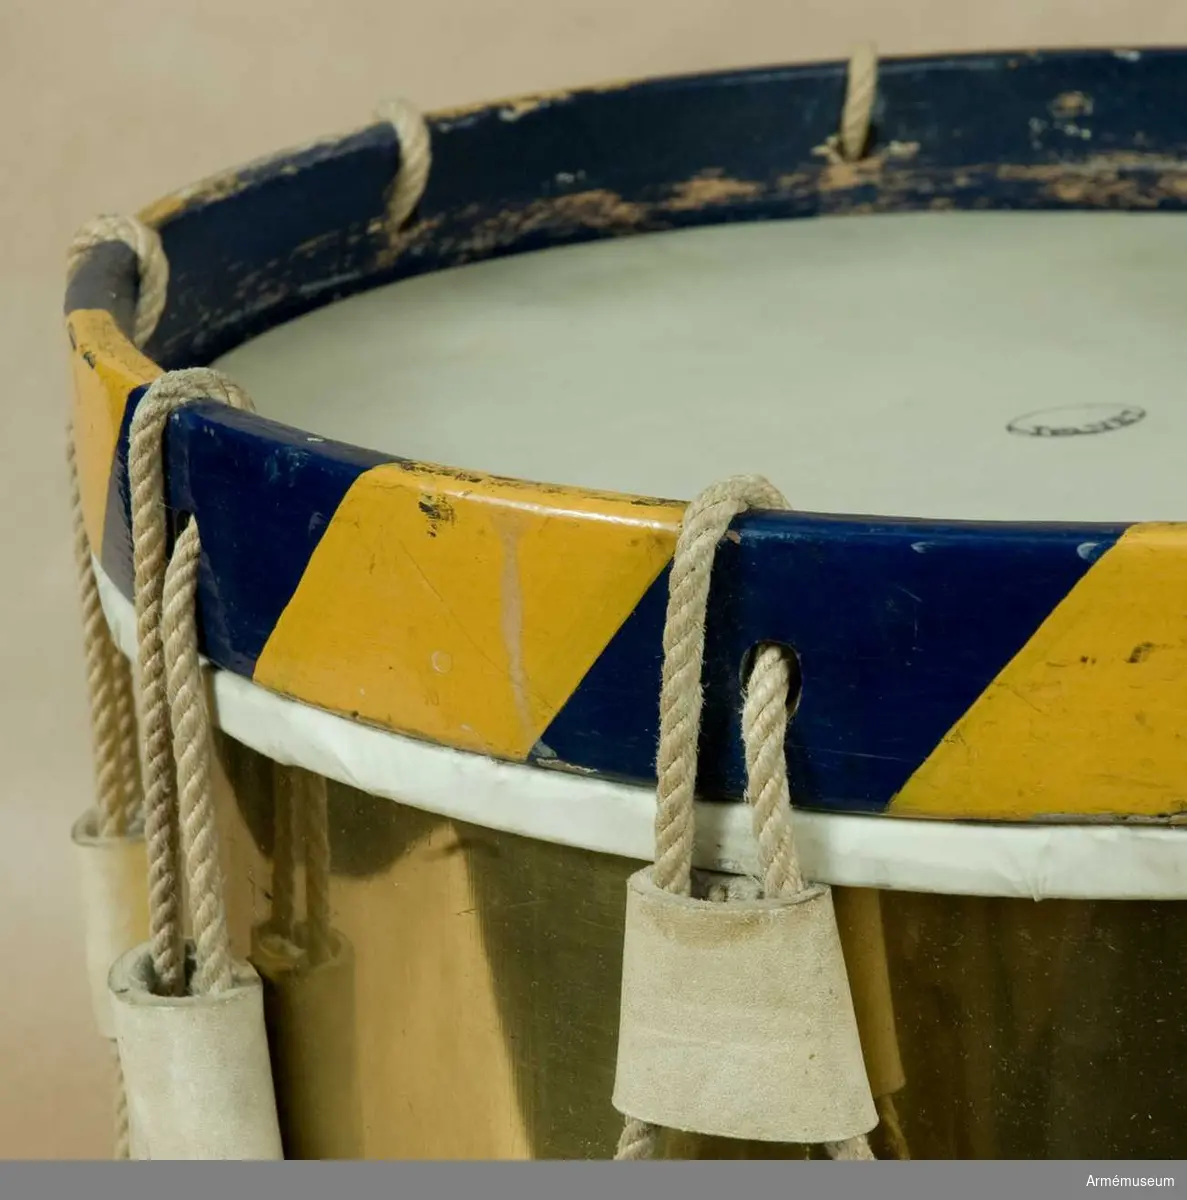 Grupp B III.
År 1897 kompletterades trumman och förseddes med ett par trumstockar enligt skrivelse från K.A.A.D. 18970412.